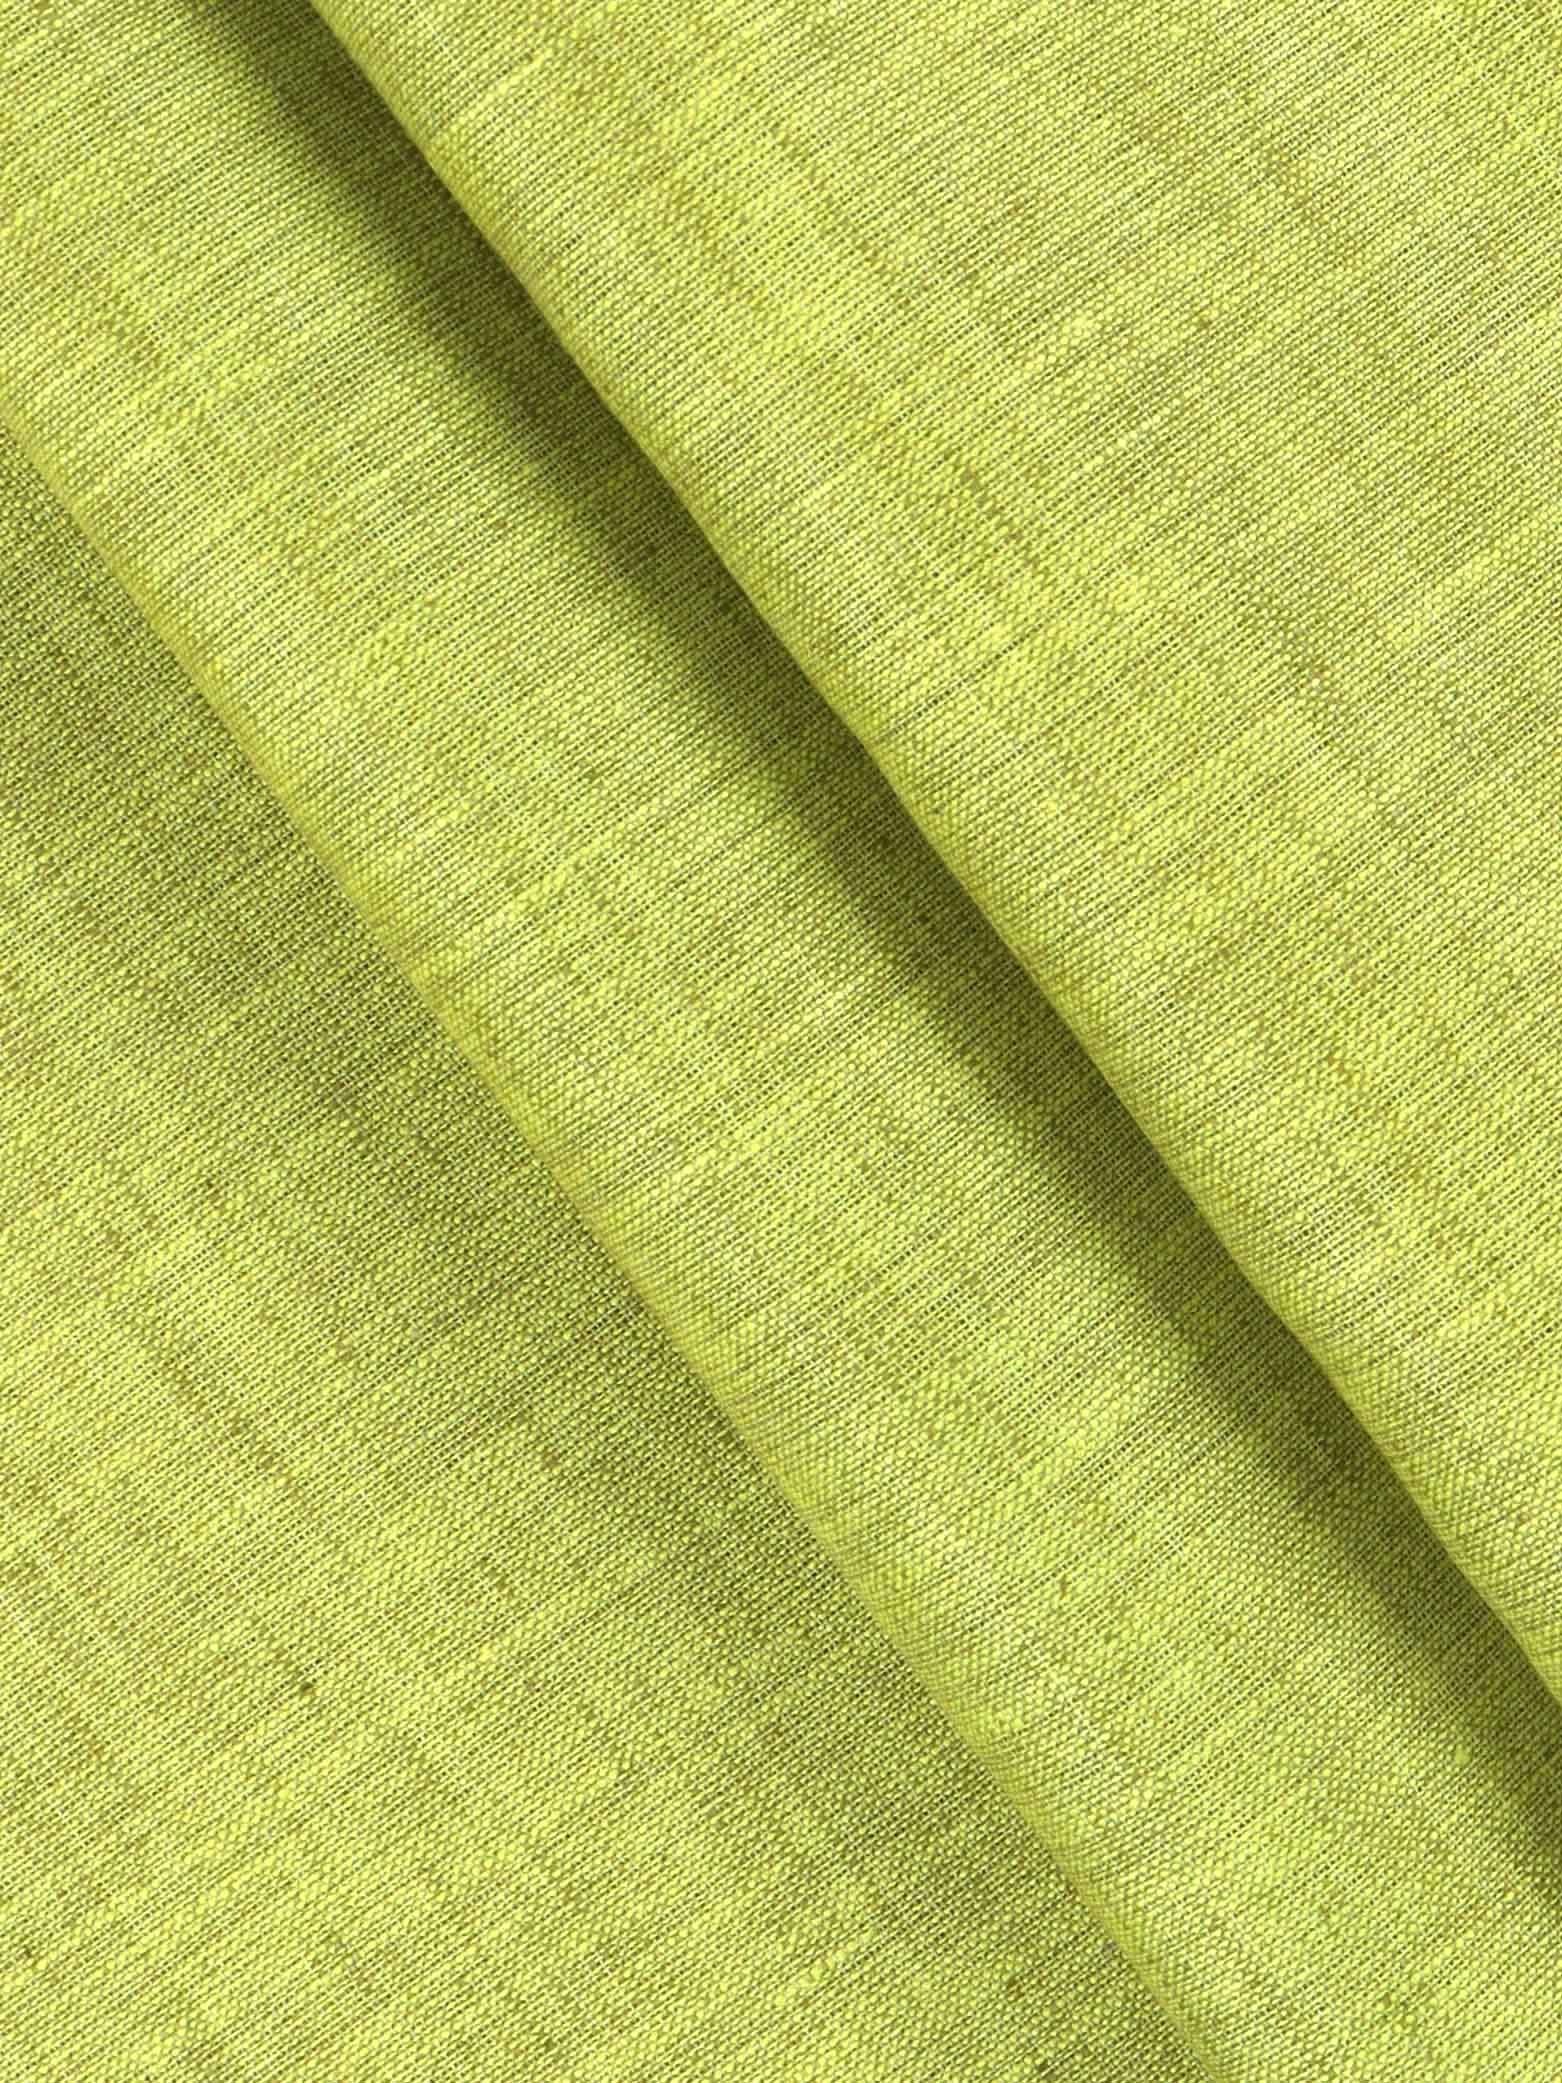 Cotton Blend Green Colour Kurtha Fabric Lampus - CAPC1160-5